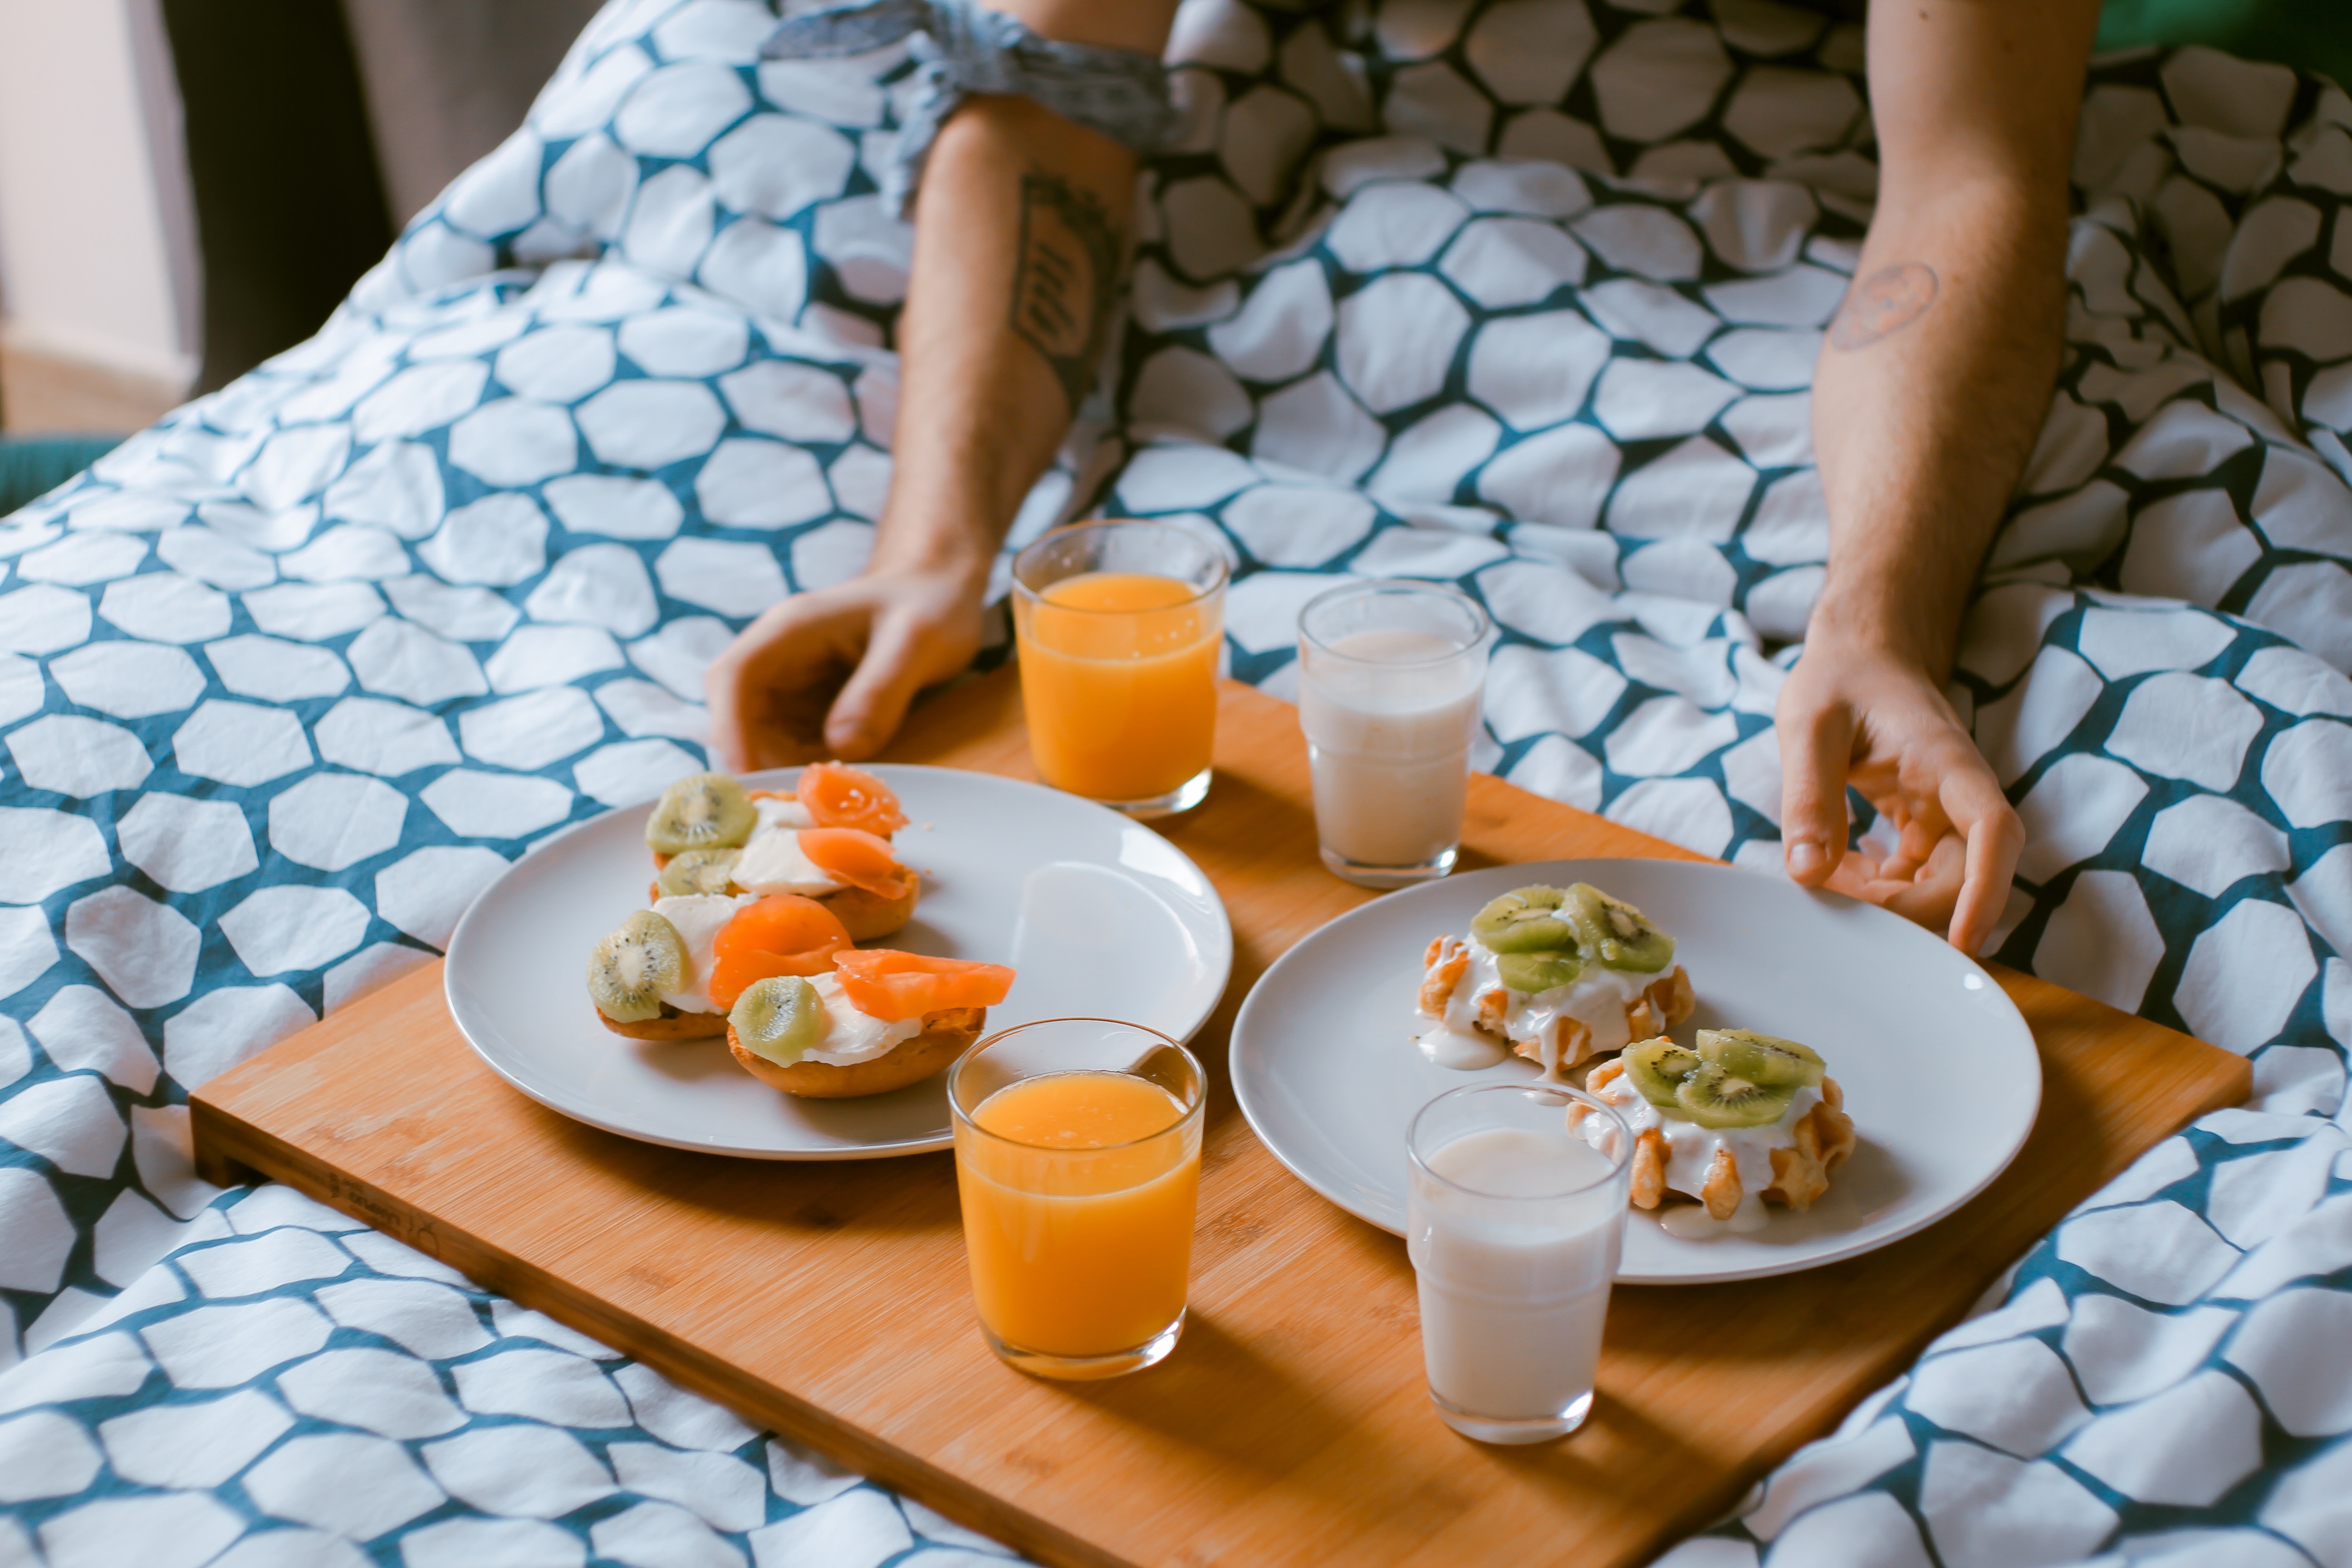 Is het gezond om je ontbijt over te slaan?